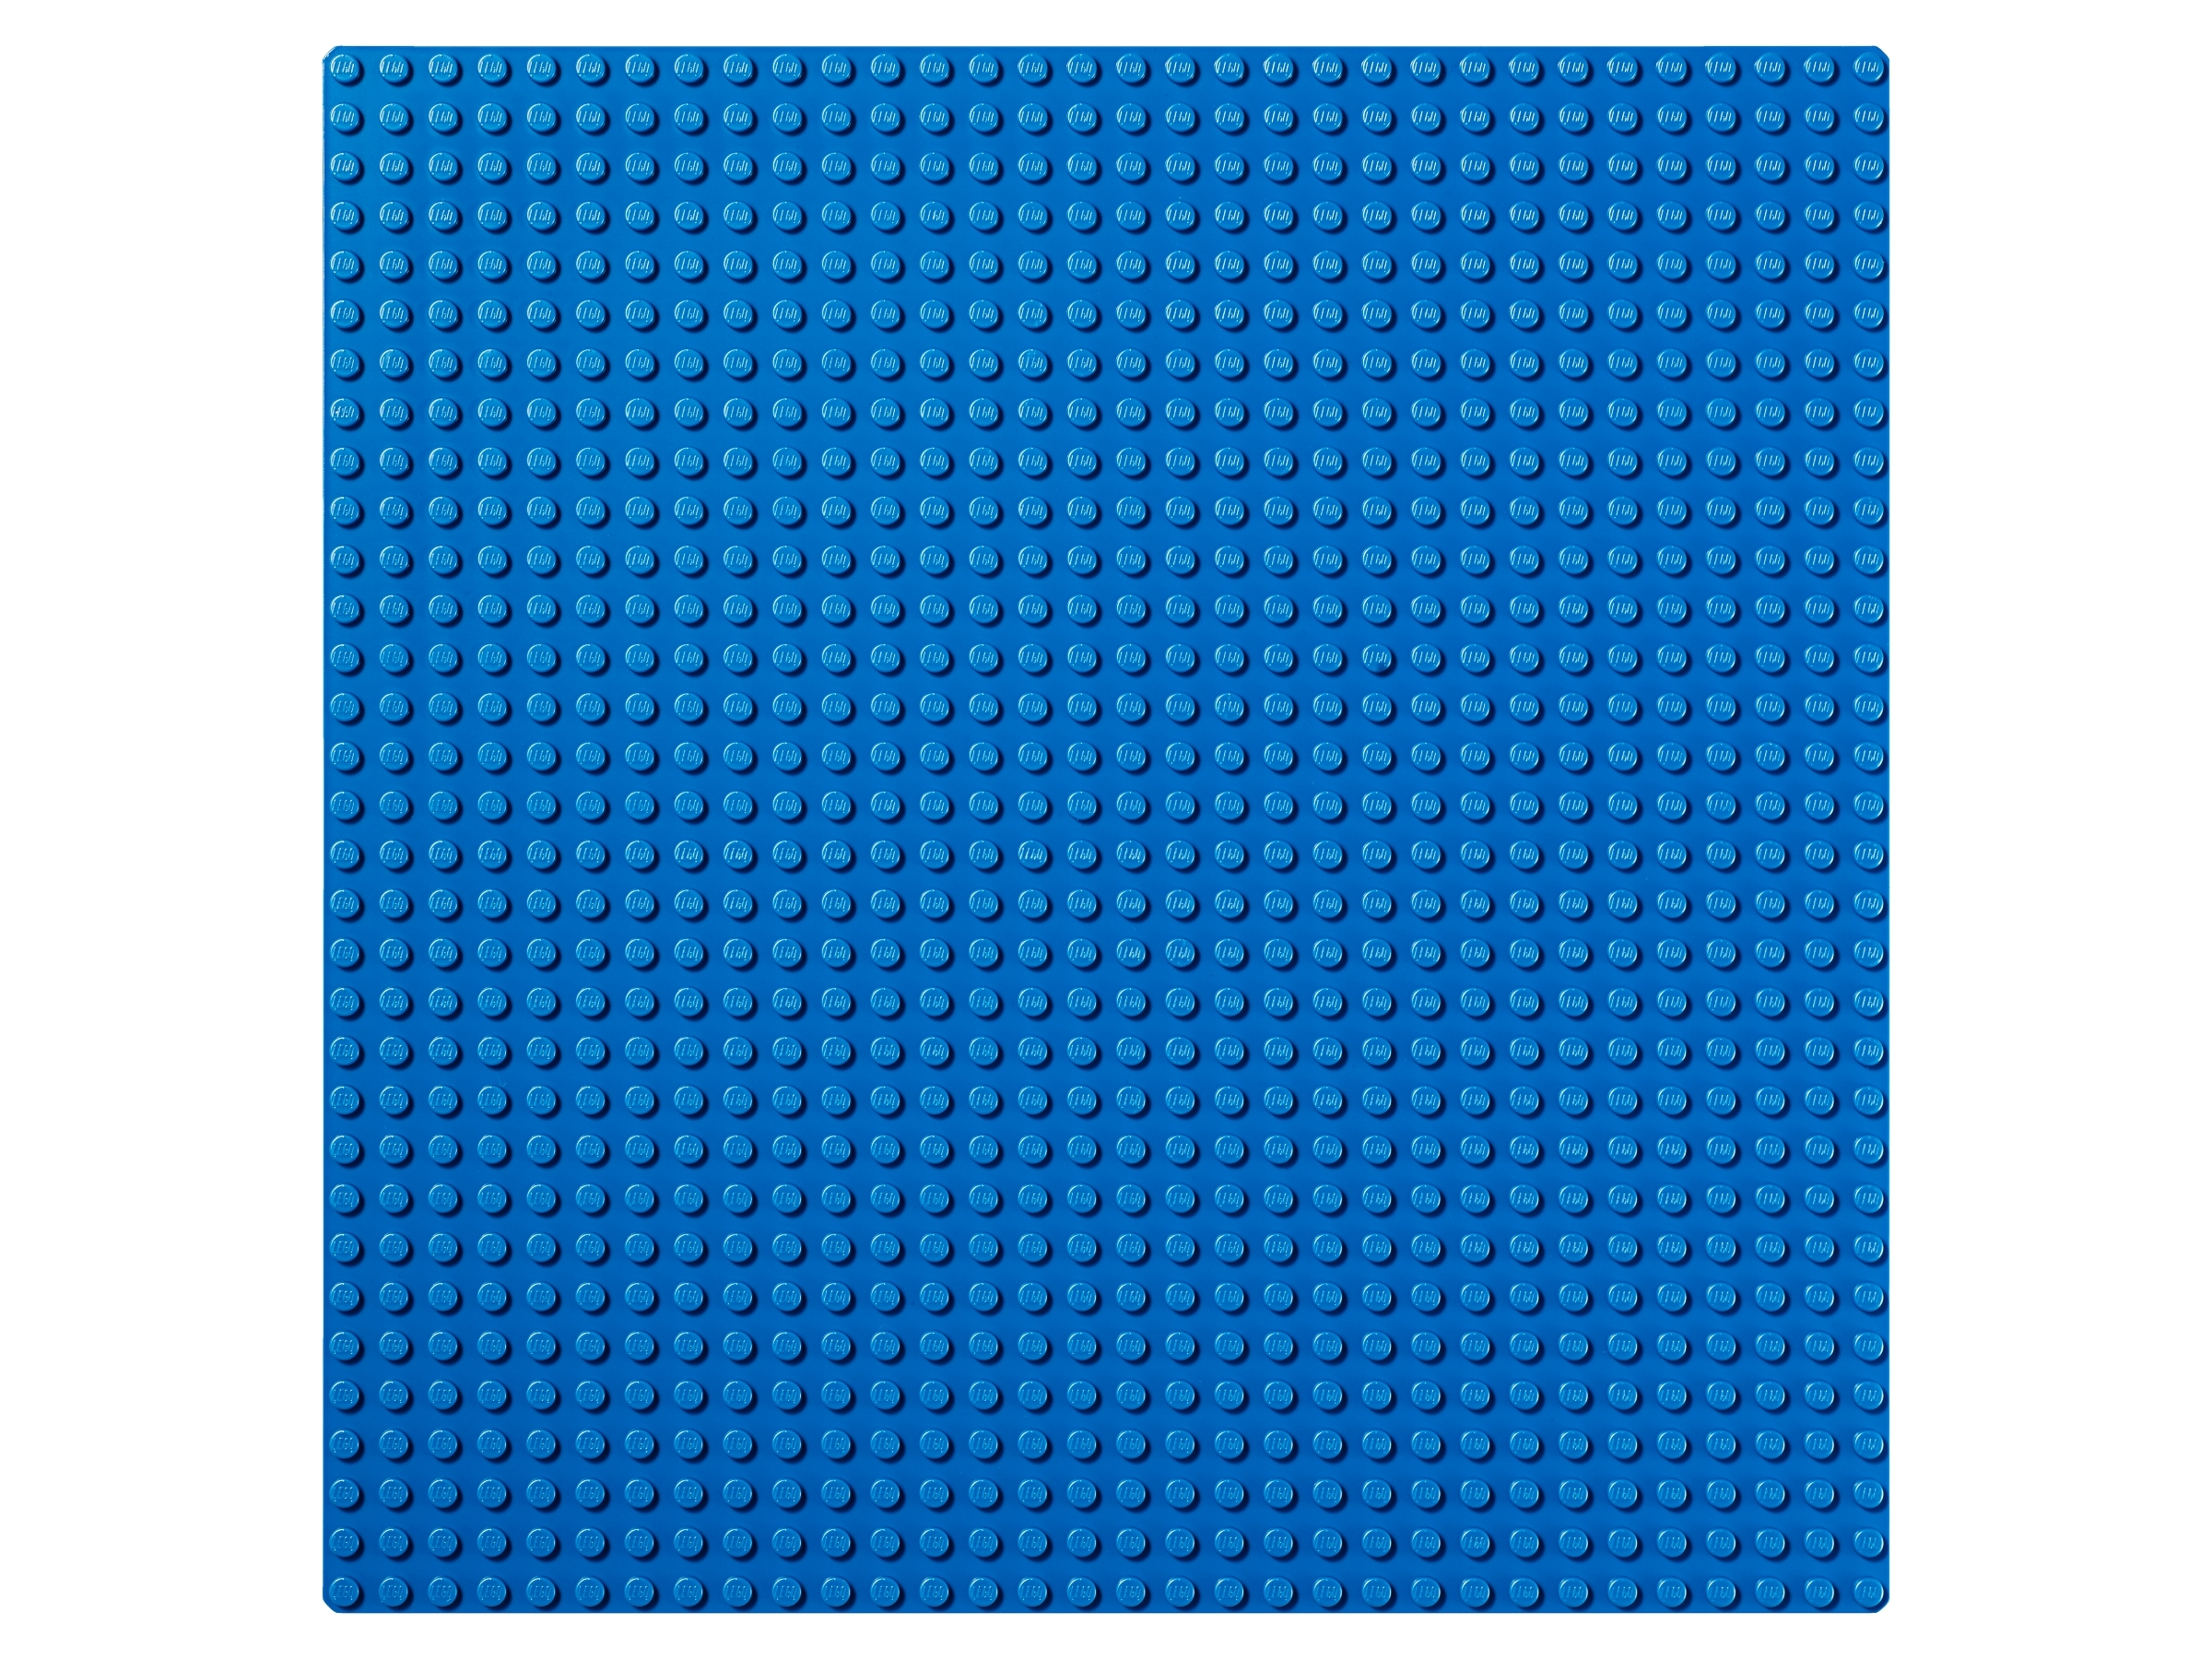 LEGO Classic - Plaque de base bleue (10714) 